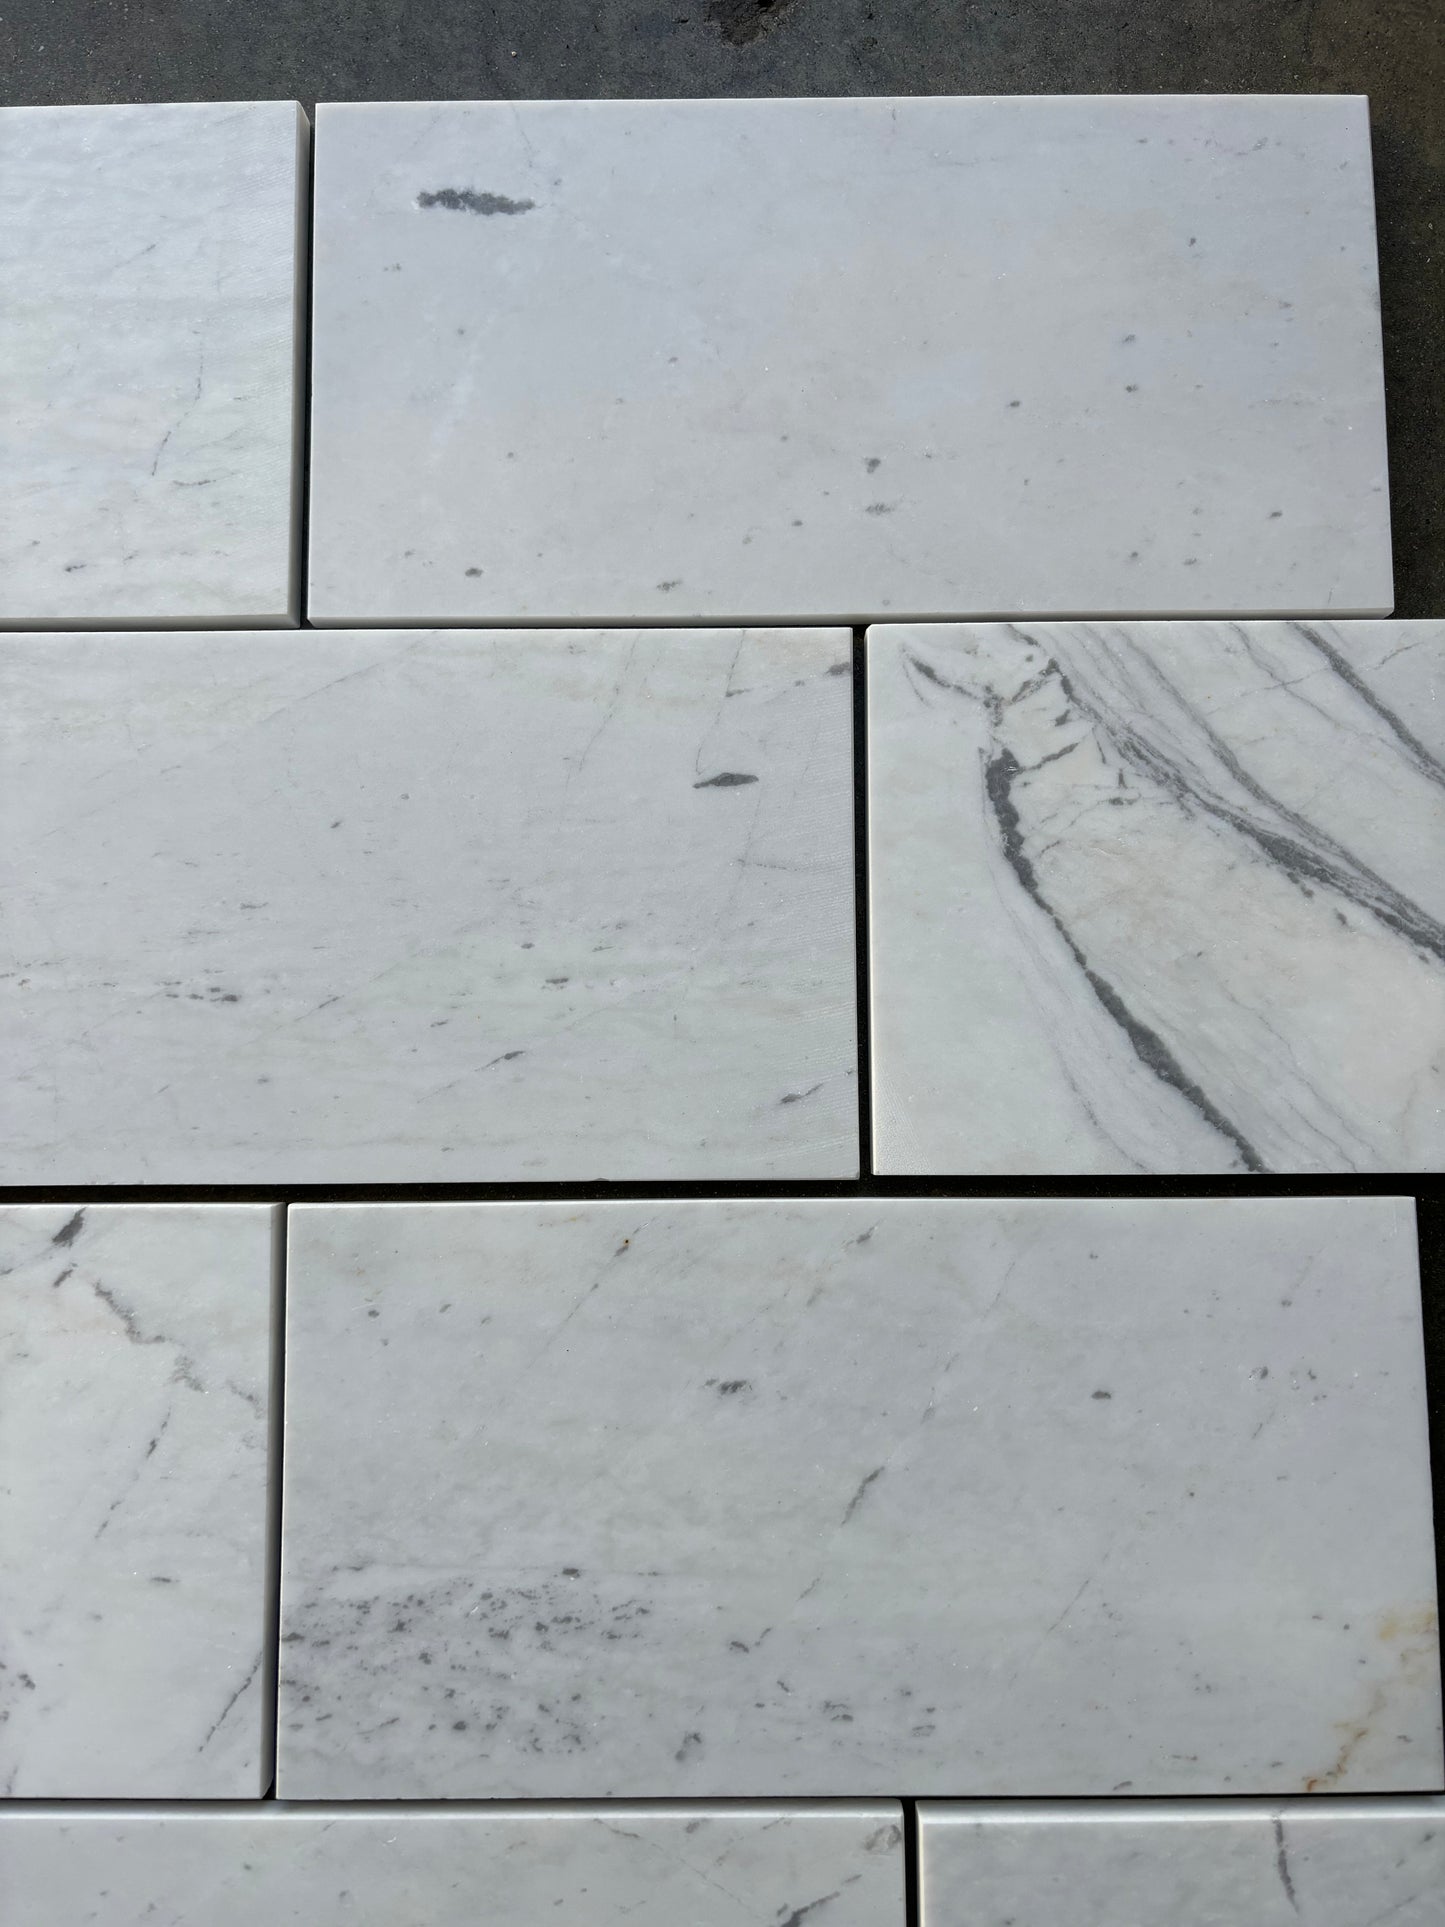 Valentino White Marble Tile Honed 6" x 12" 3/8" Tile